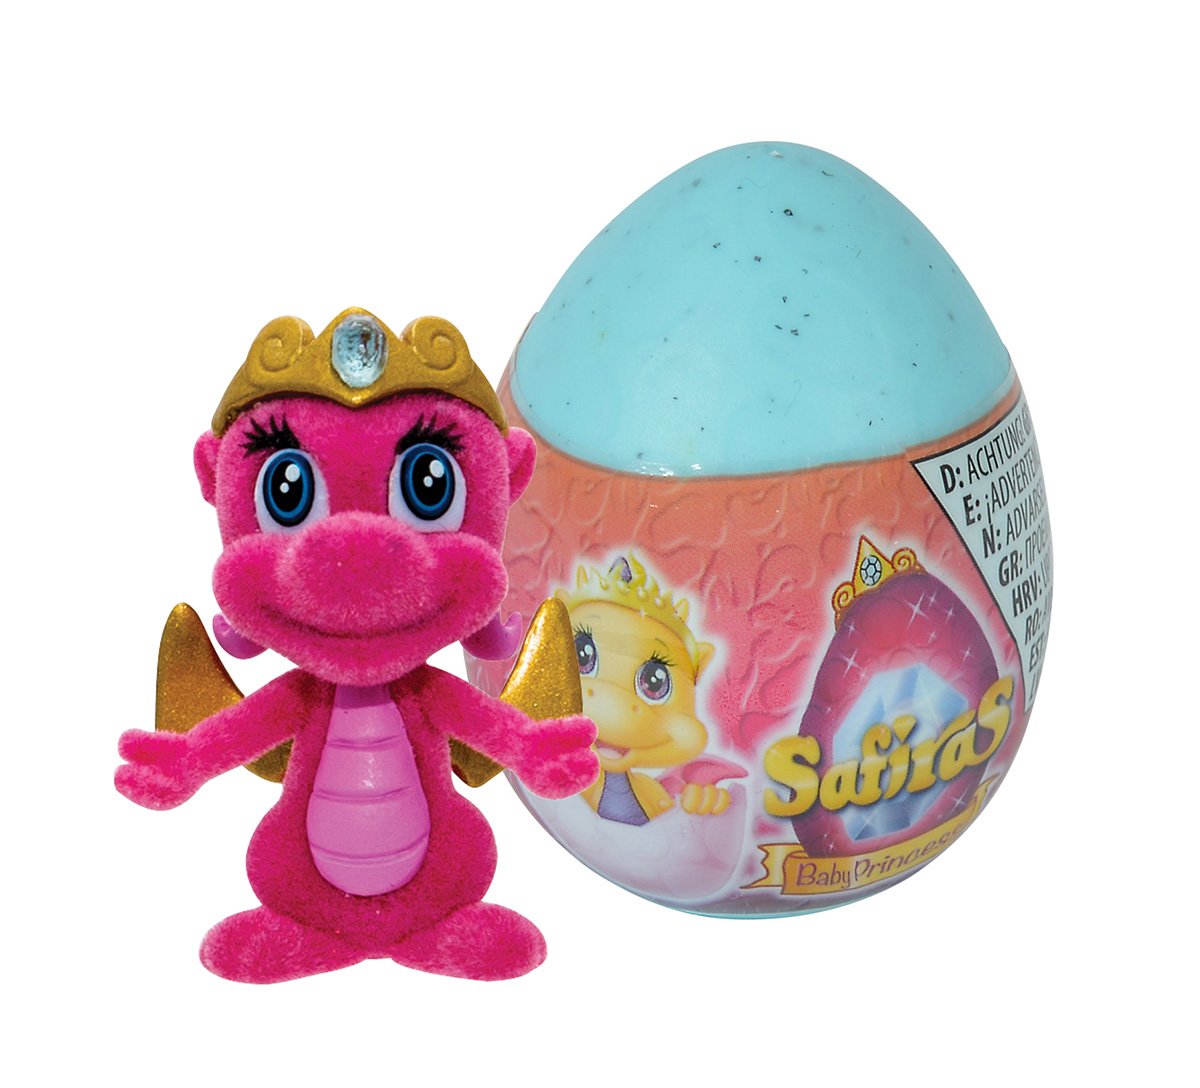 Safiras Collectibles Baby Princess In Egg Select Random Assort A